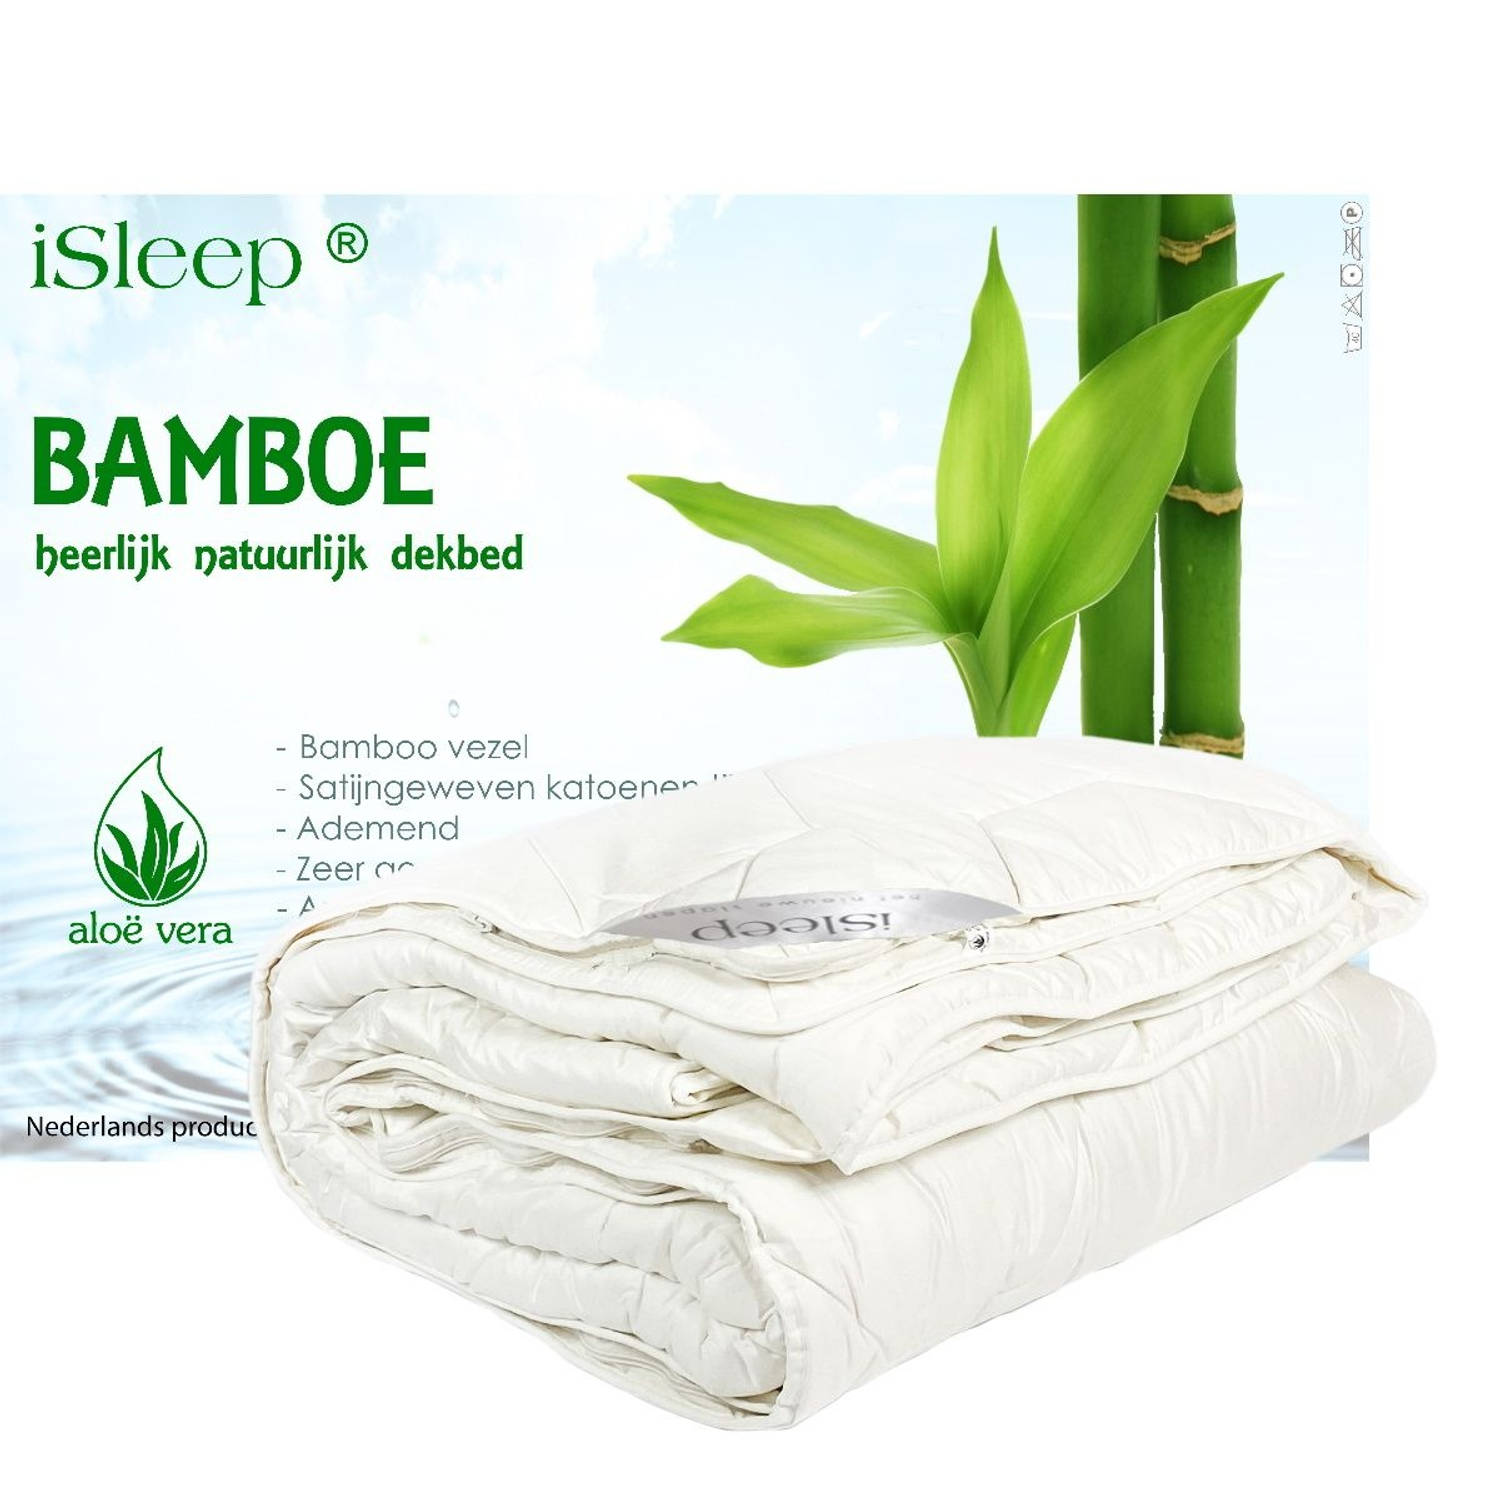 iSleep 4-seizoenen dekbed Bamboo Comfort DeLuxe 2-Persoons 200x220 cm